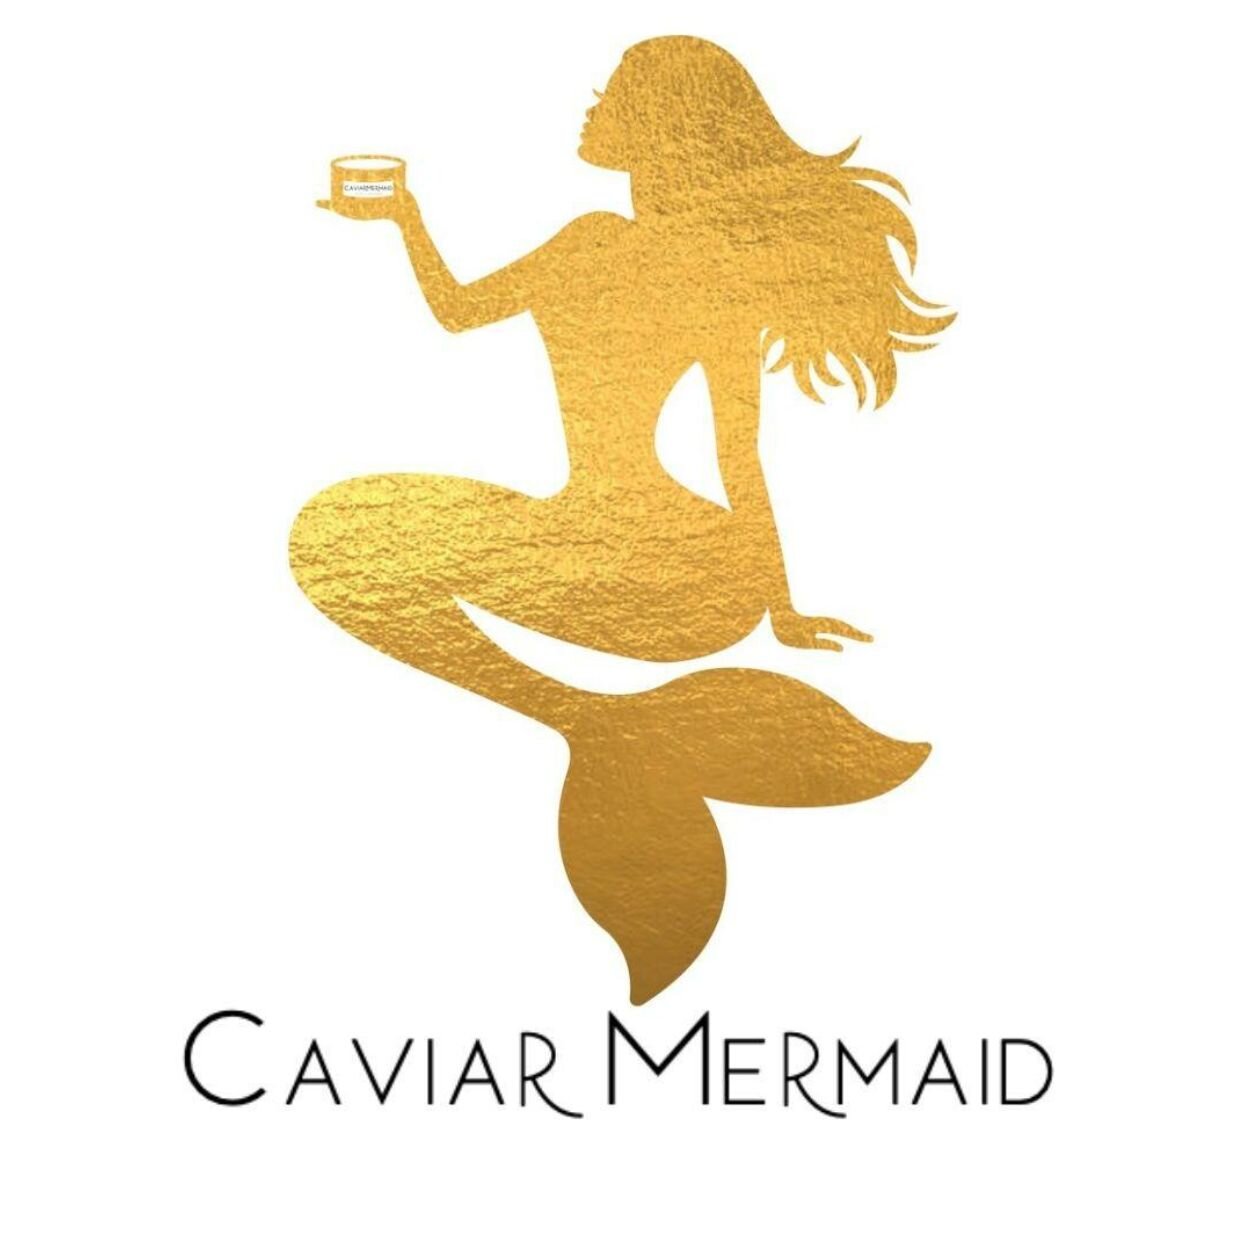 Caviar mermaid logo